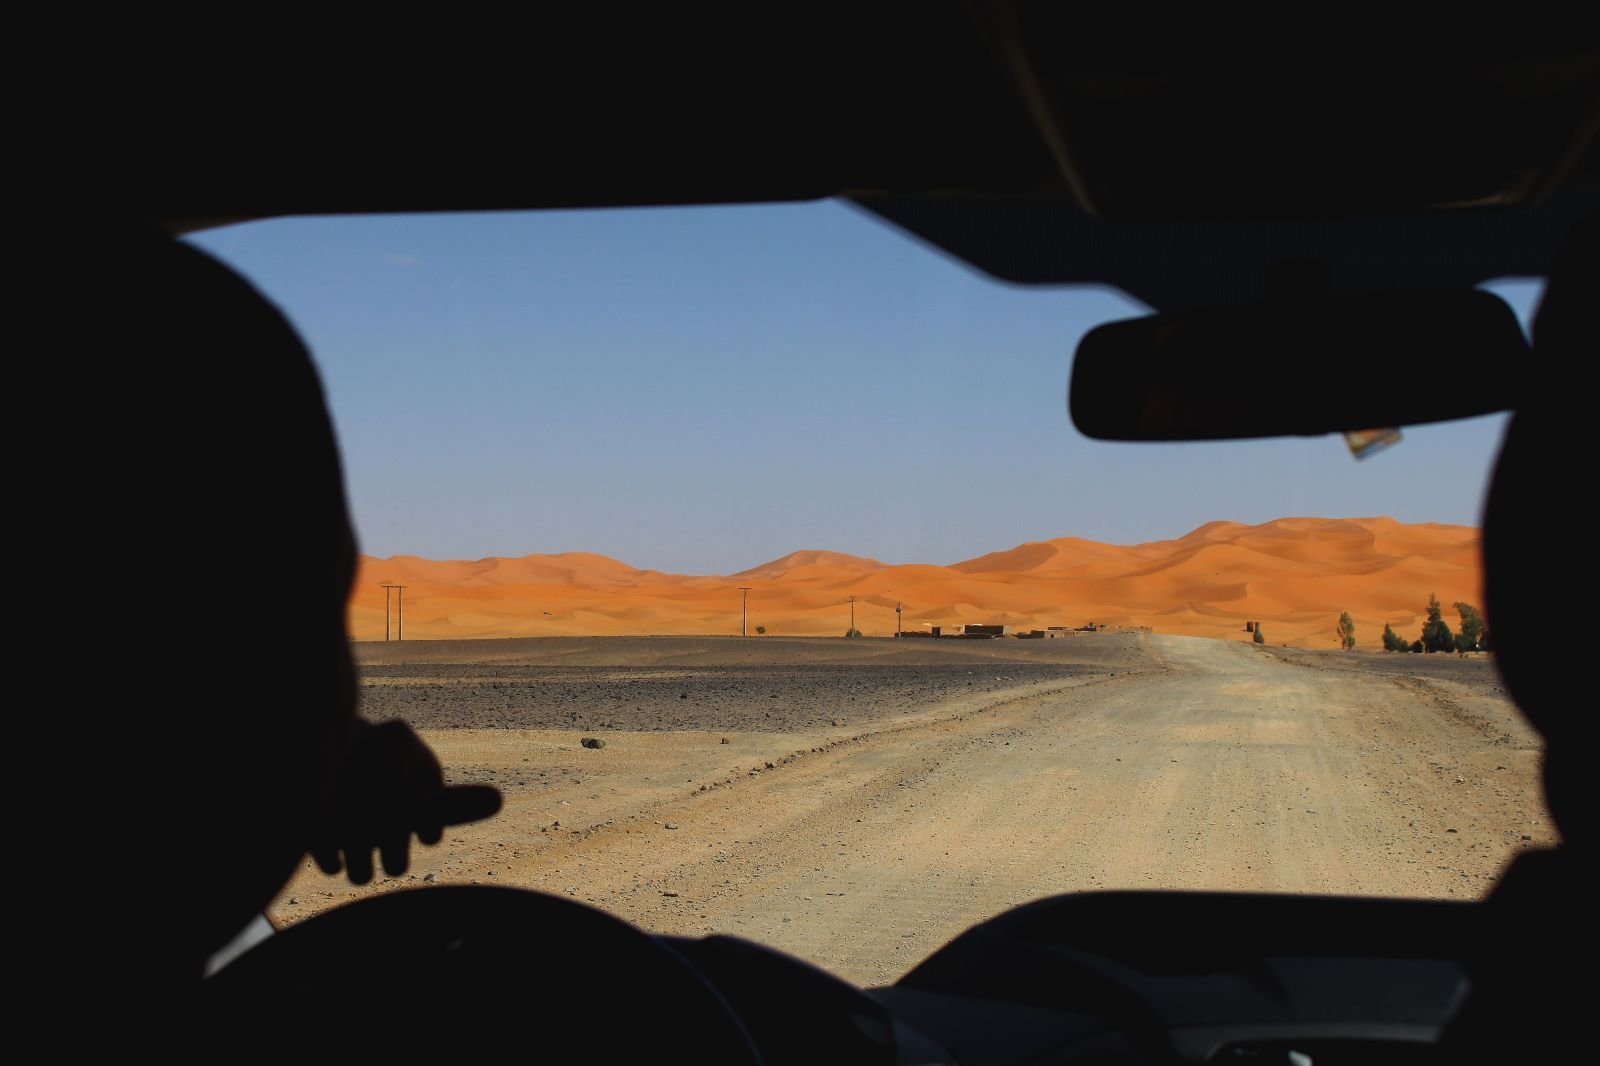 View of the Sahara